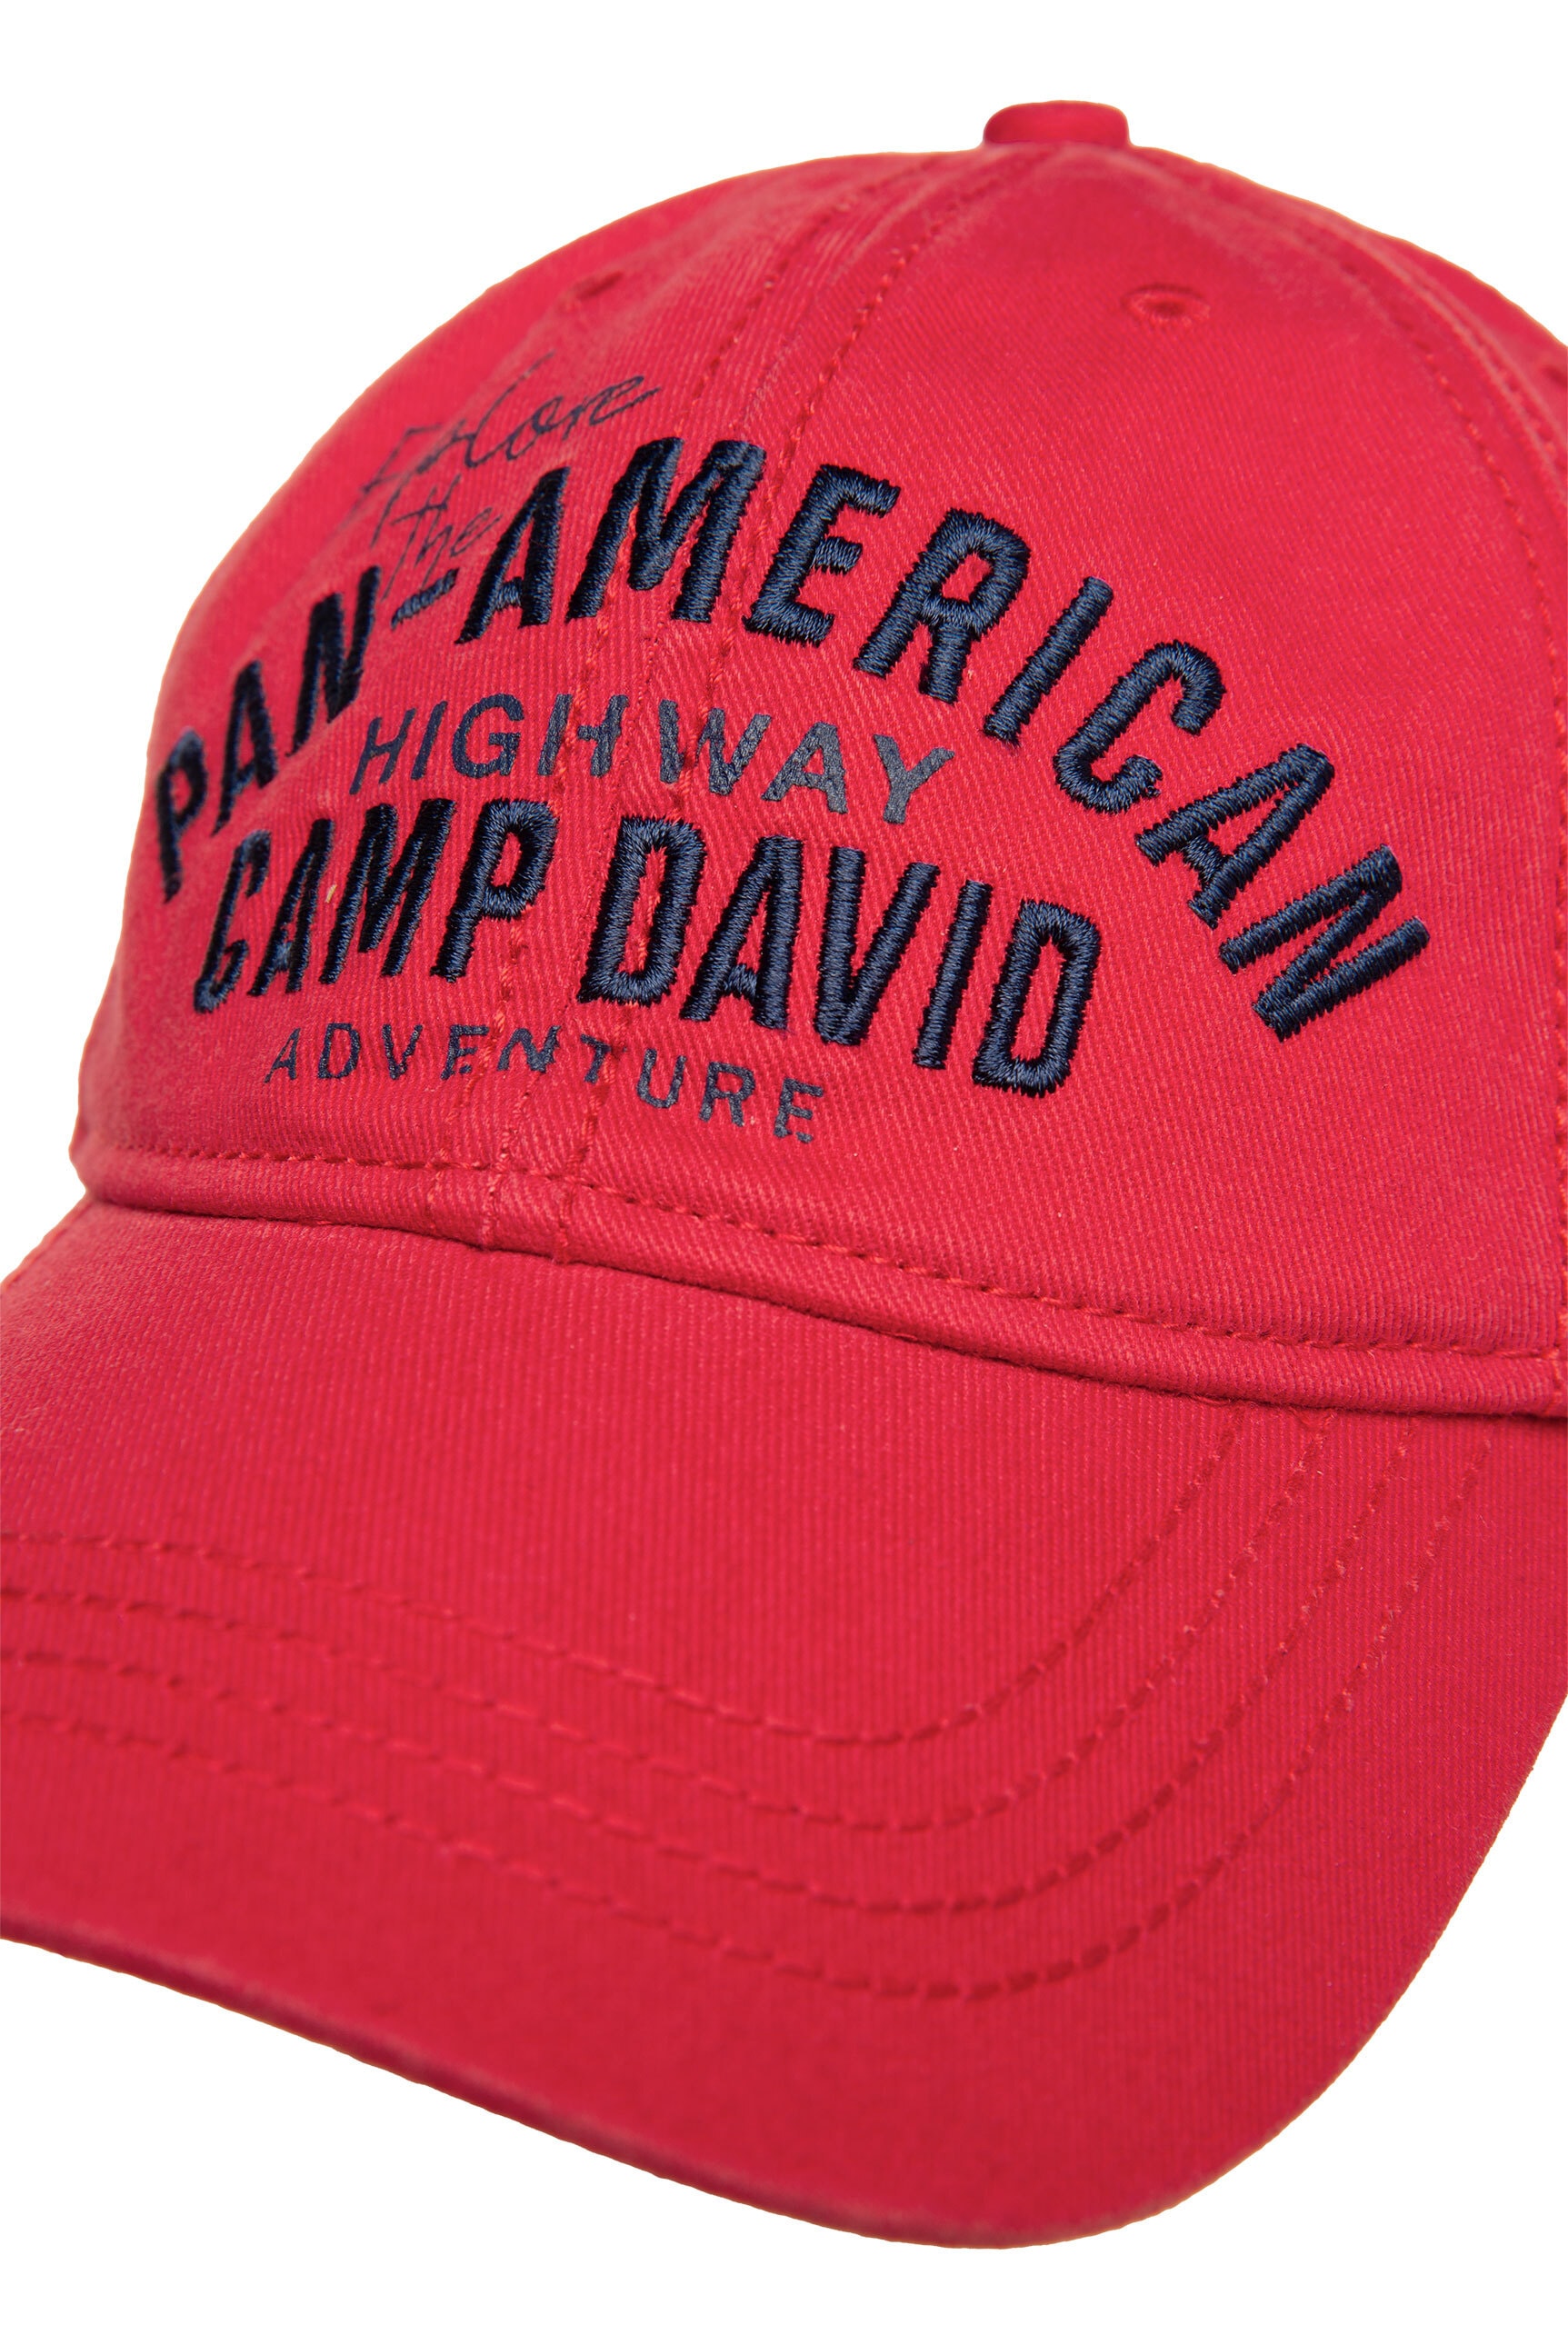 CAMP DAVID Baseball Cap, mit Klipp-Verschluss auf Raten | BAUR